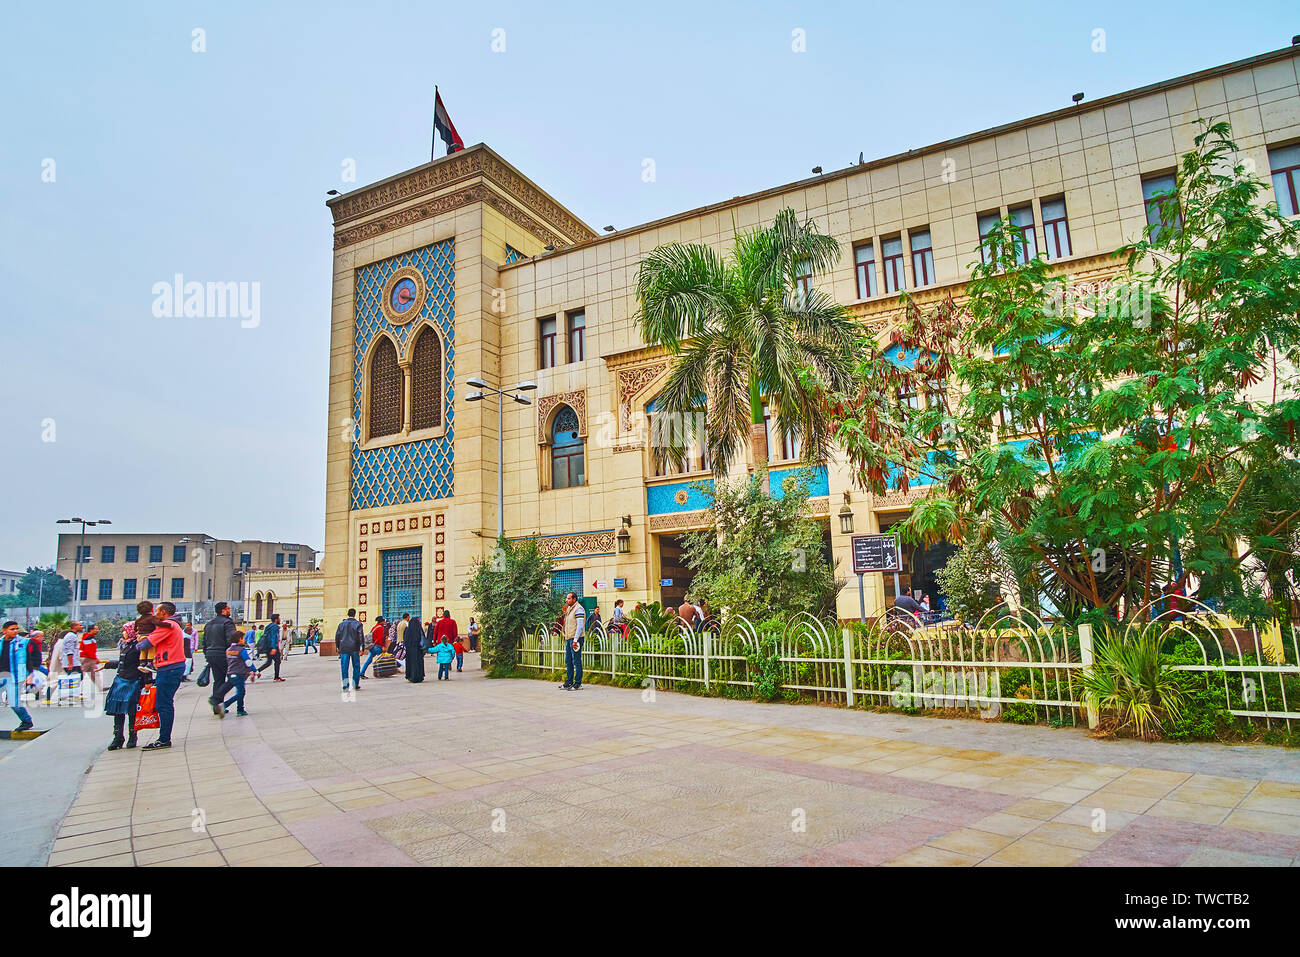 El CAIRO, EGIPTO - Diciembre 22, 2017: la concurrida plaza en frente del edificio escénico de Ramses (MISR) Estación de Ferrocarril, el 22 de diciembre en El Cairo Foto de stock